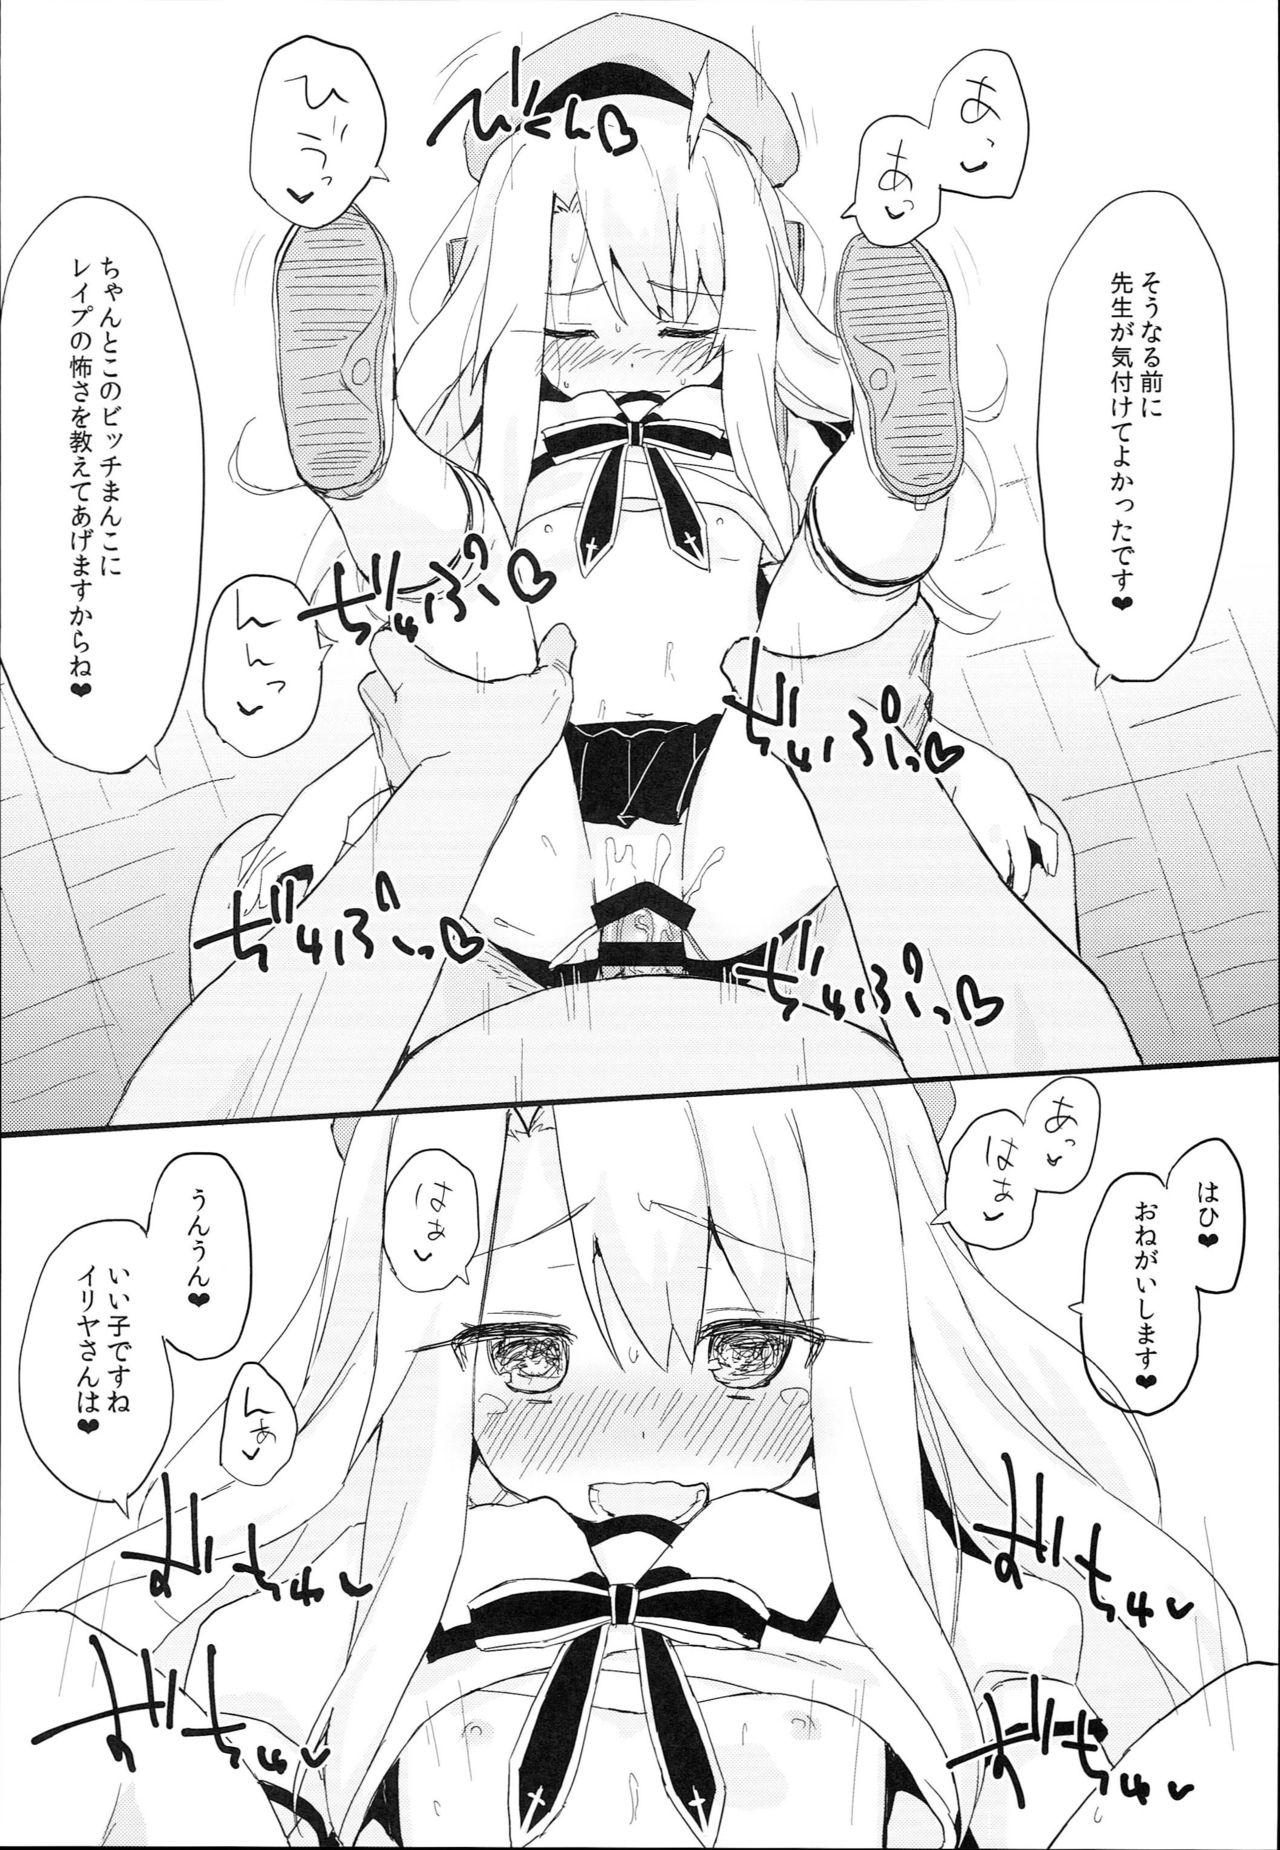 Transexual Doushitemo Illya-chan no Onakani Shasei Shitai node - Fate kaleid liner prisma illya Gorgeous - Page 10